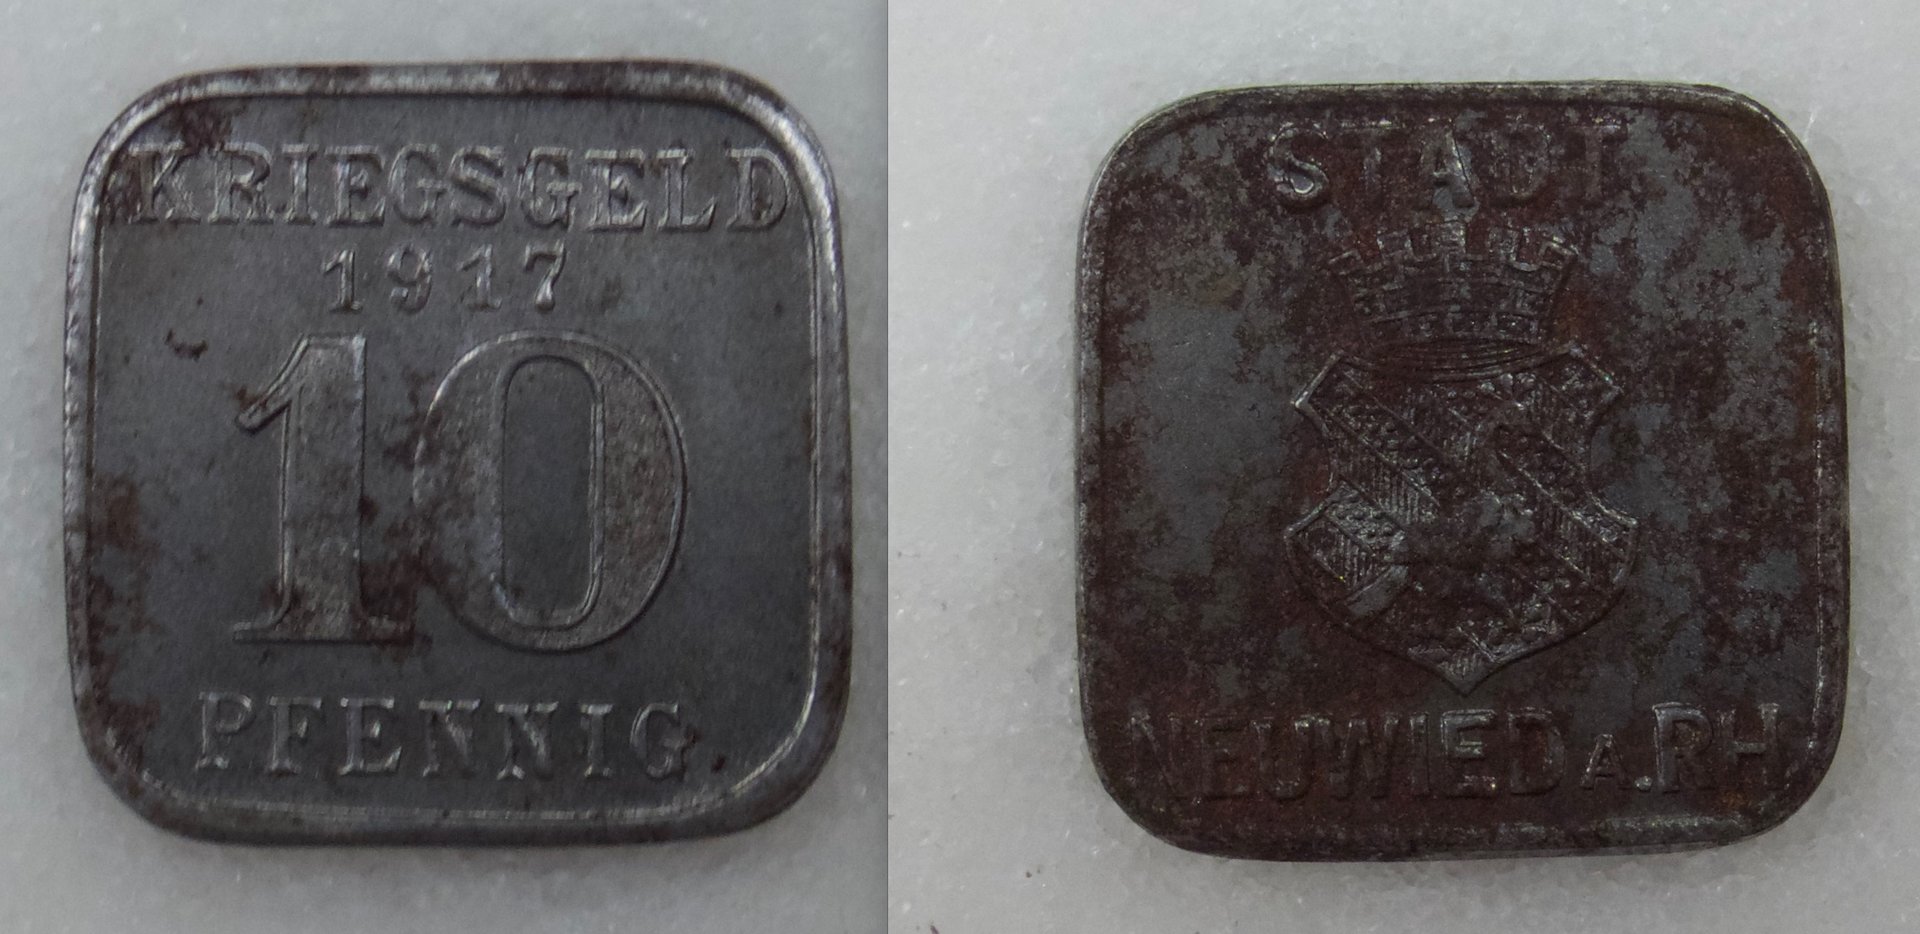 Kriegsgeld 1917 10 pfennig iron.jpeg